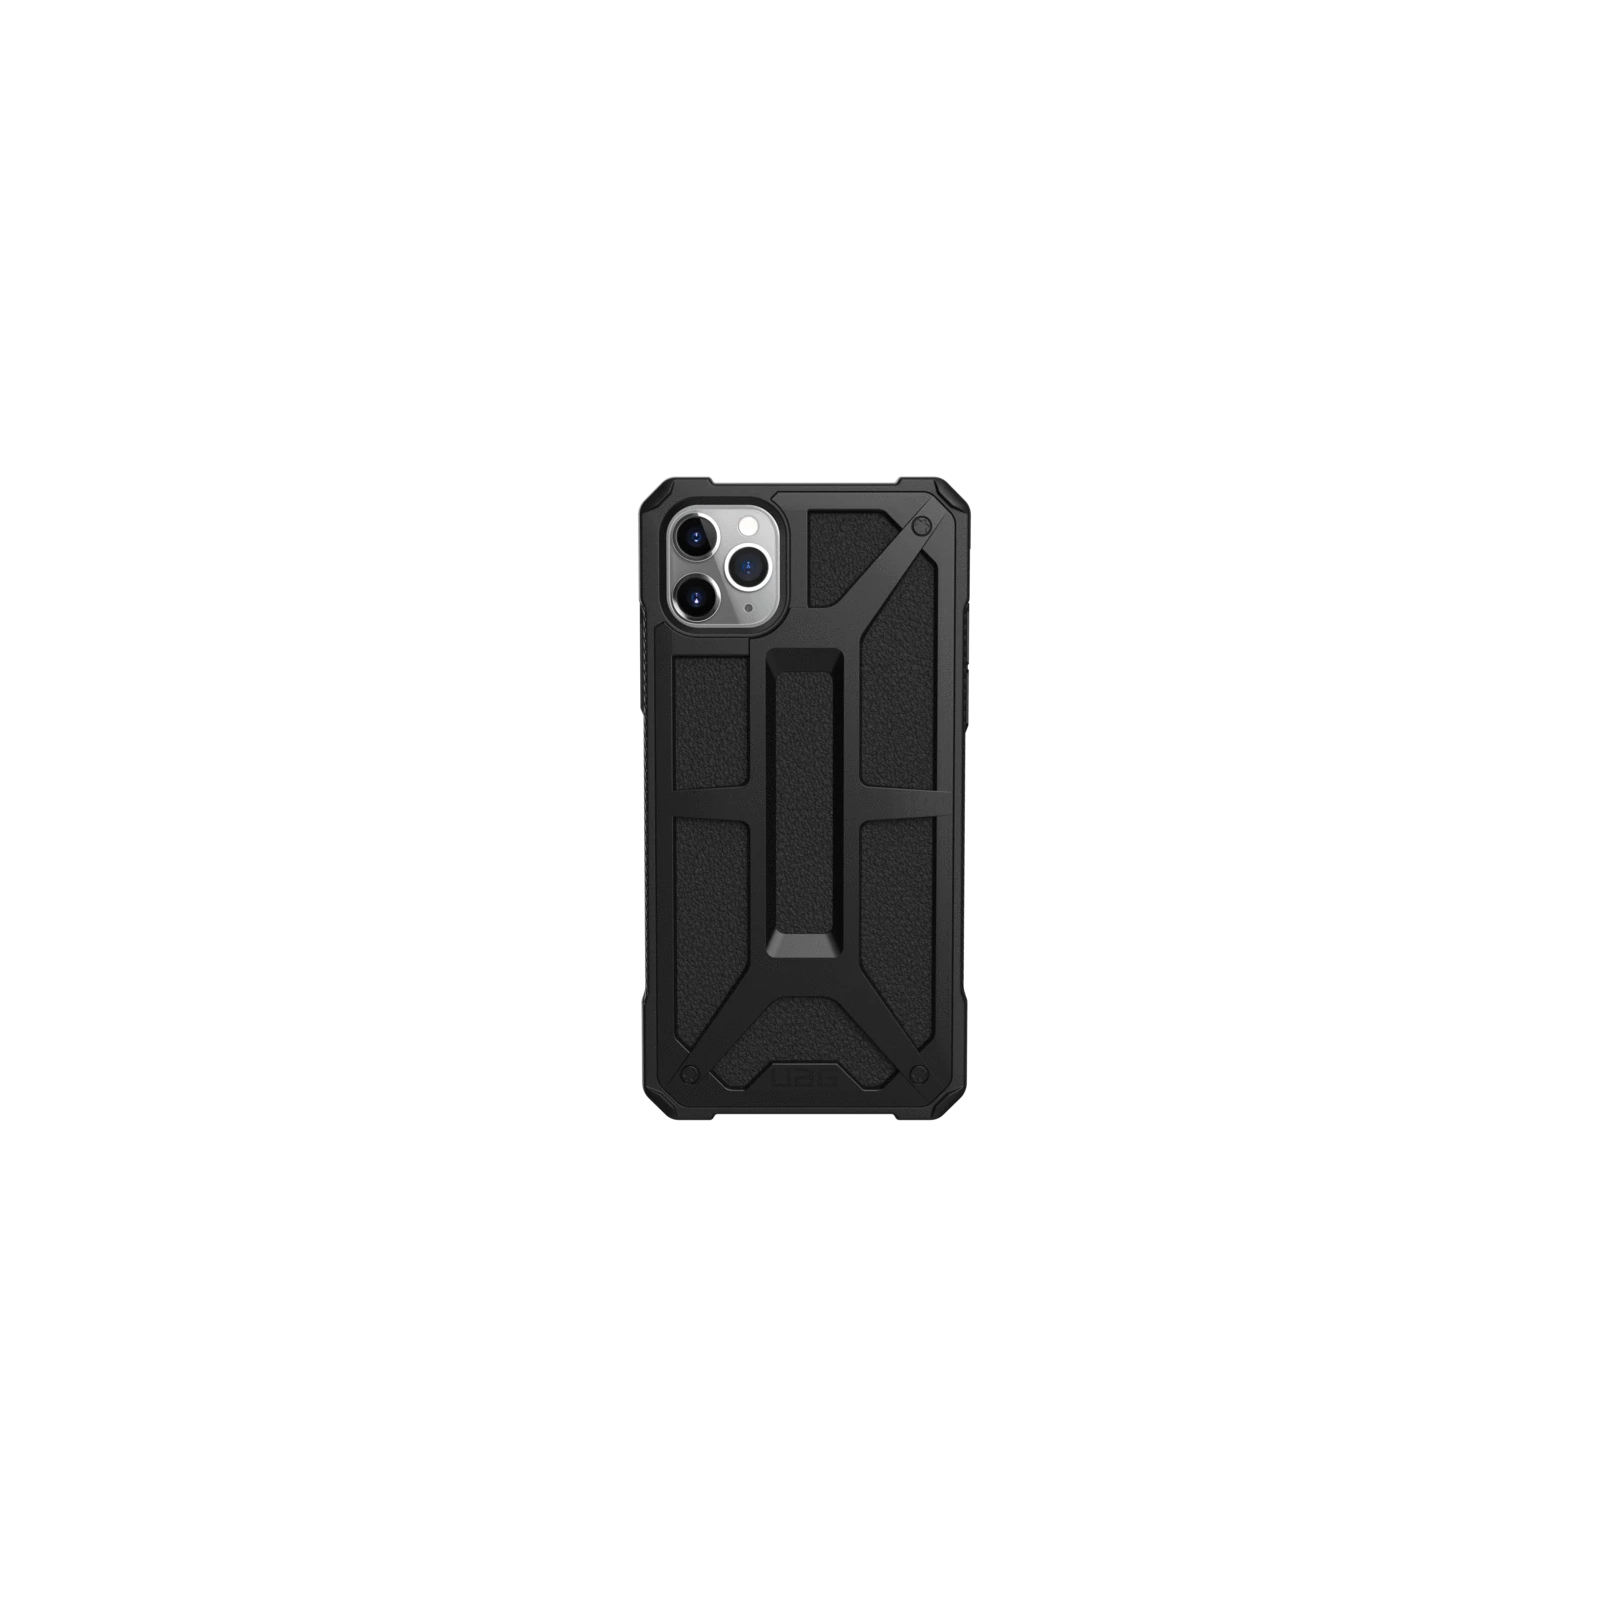 Чехол для мобильного телефона UAG iPhone 11 Pro Max Monarch, Black (111721114040)